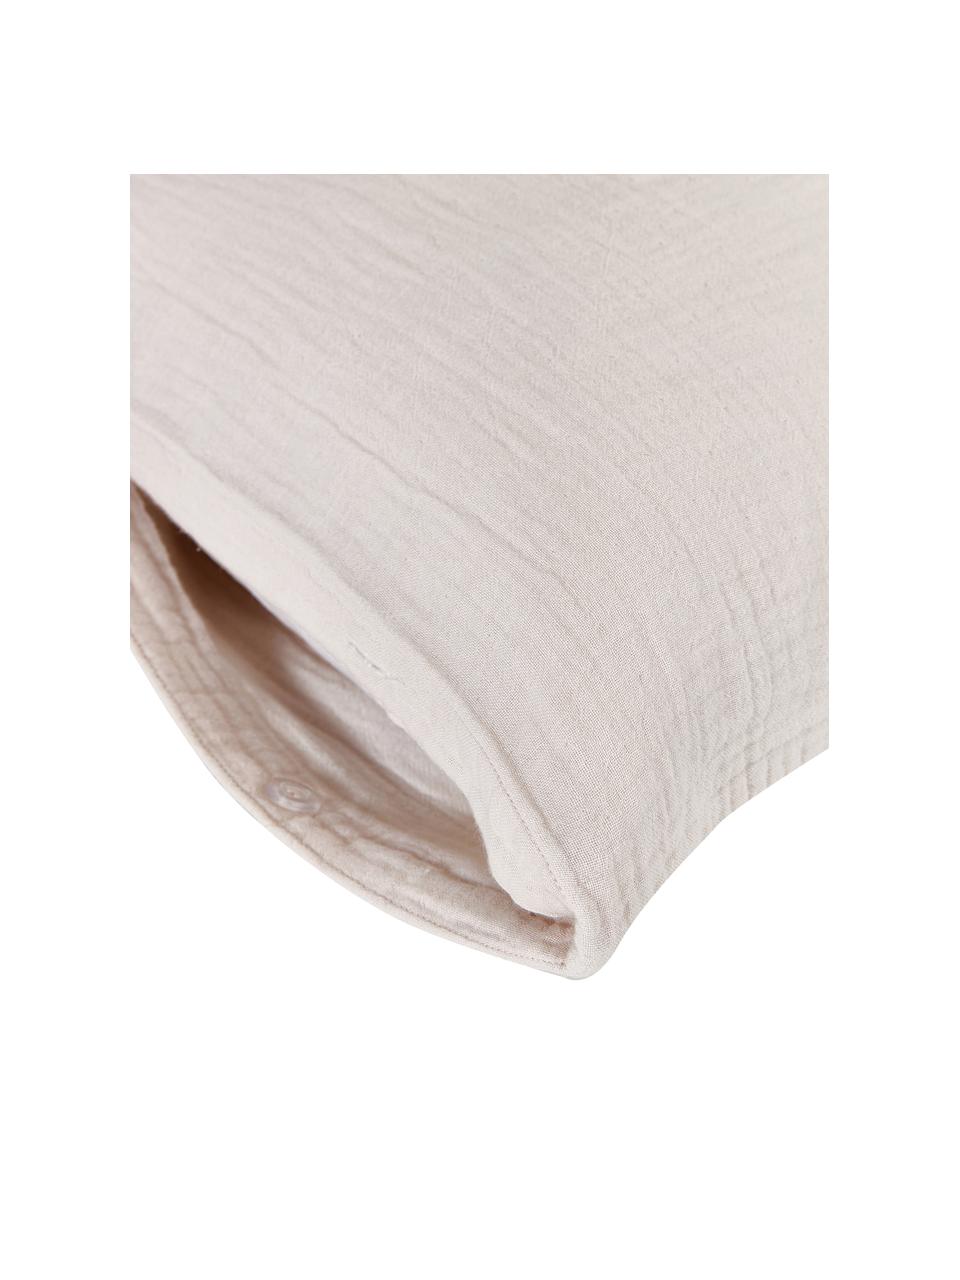 Fundas de almohada de muselina de algodón Odile., Beige, An 50 x L 70 cm, 2 uds.